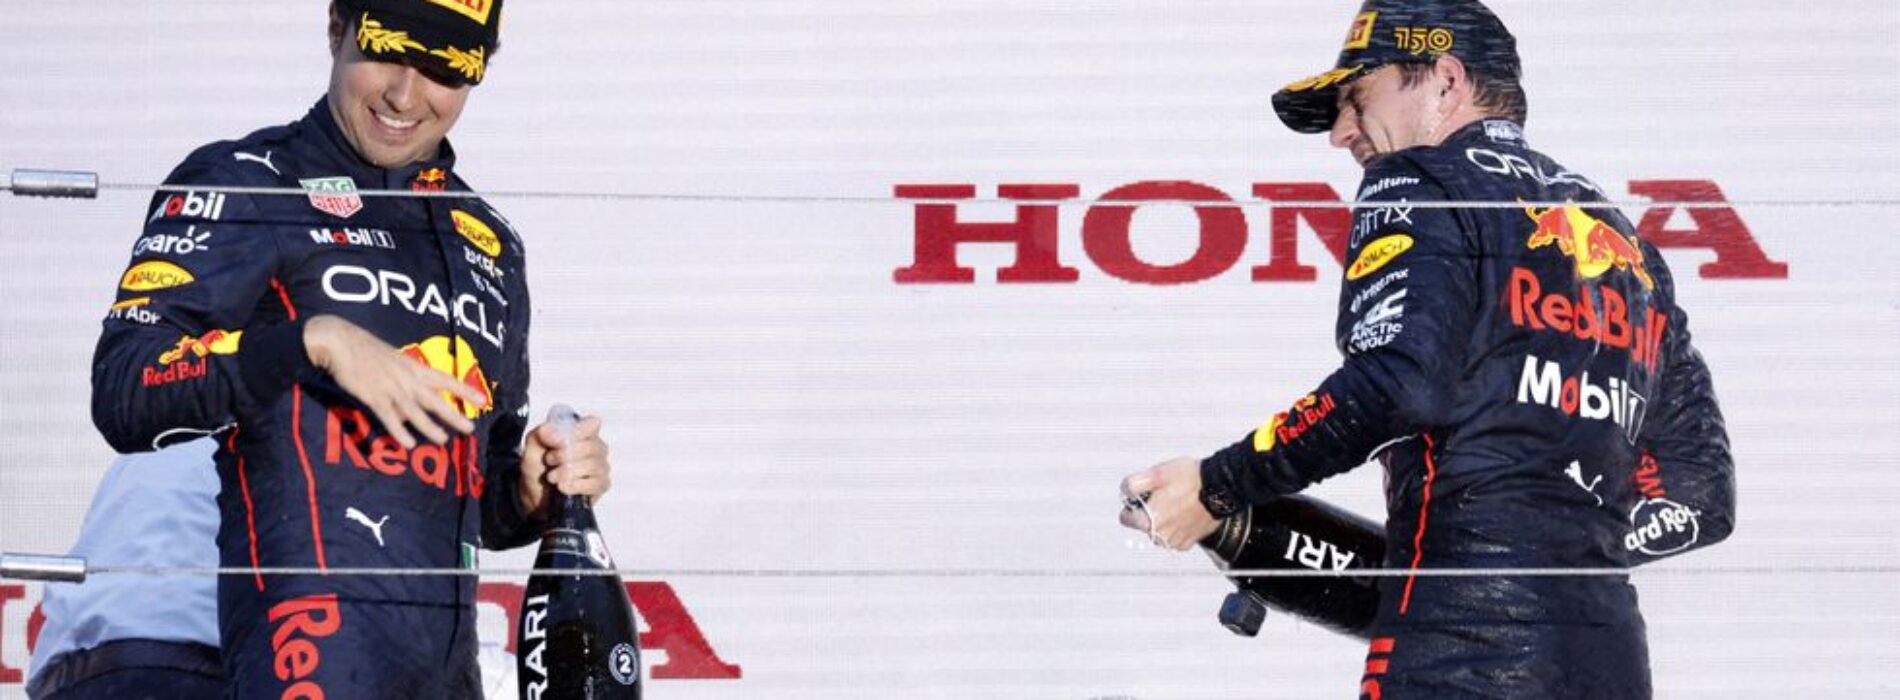 Checo Pérez segundo lugar en la coronación de #Verstappen durante el Gran Premio de #Japón